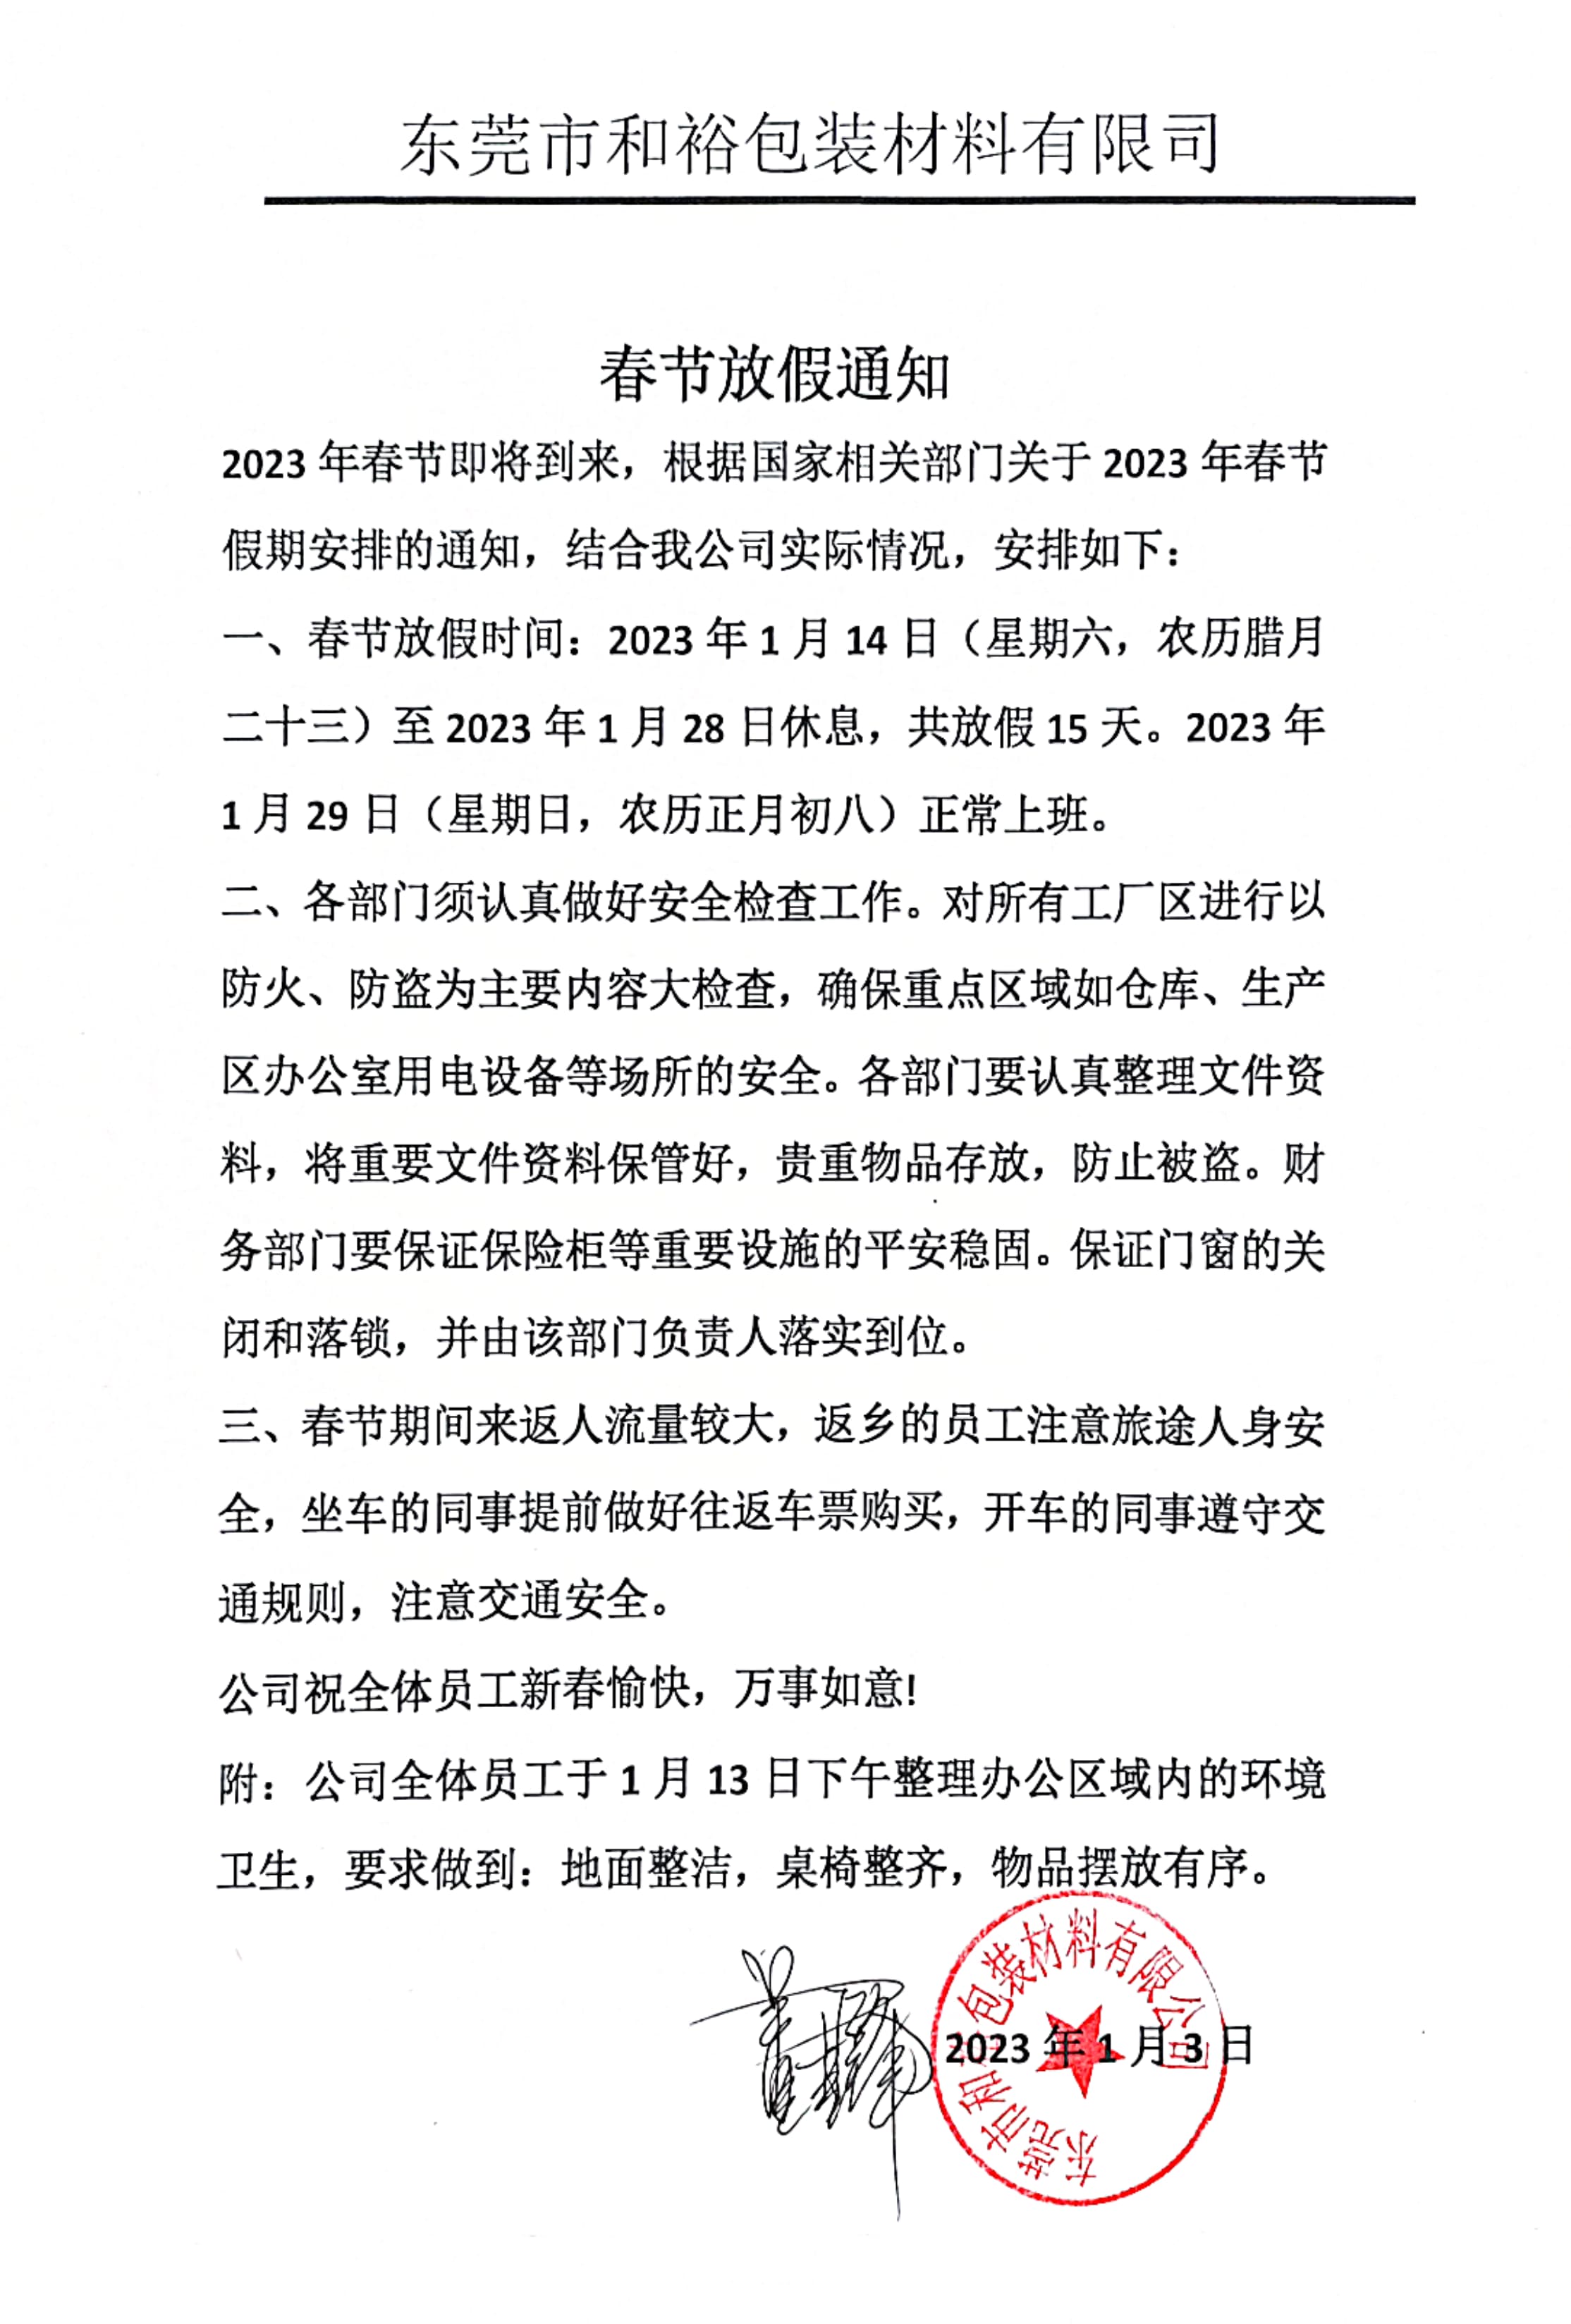 河南2023年和裕包装春节放假通知